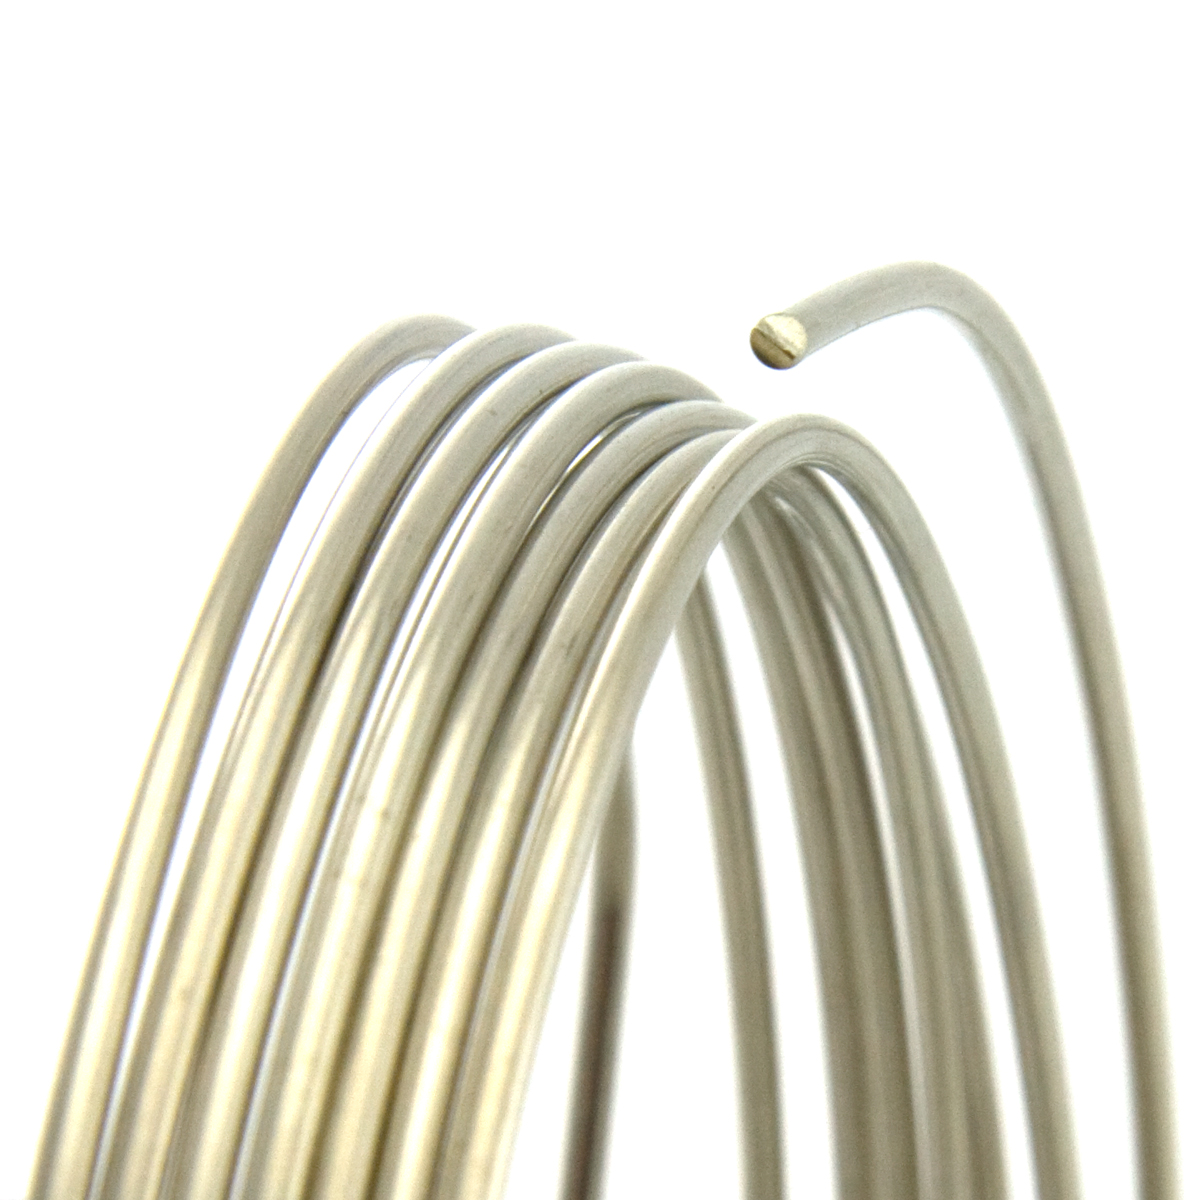 21 Gauge Round Half Hard Nickel Silver Wire: Jewelry Making Supplies, Instructions